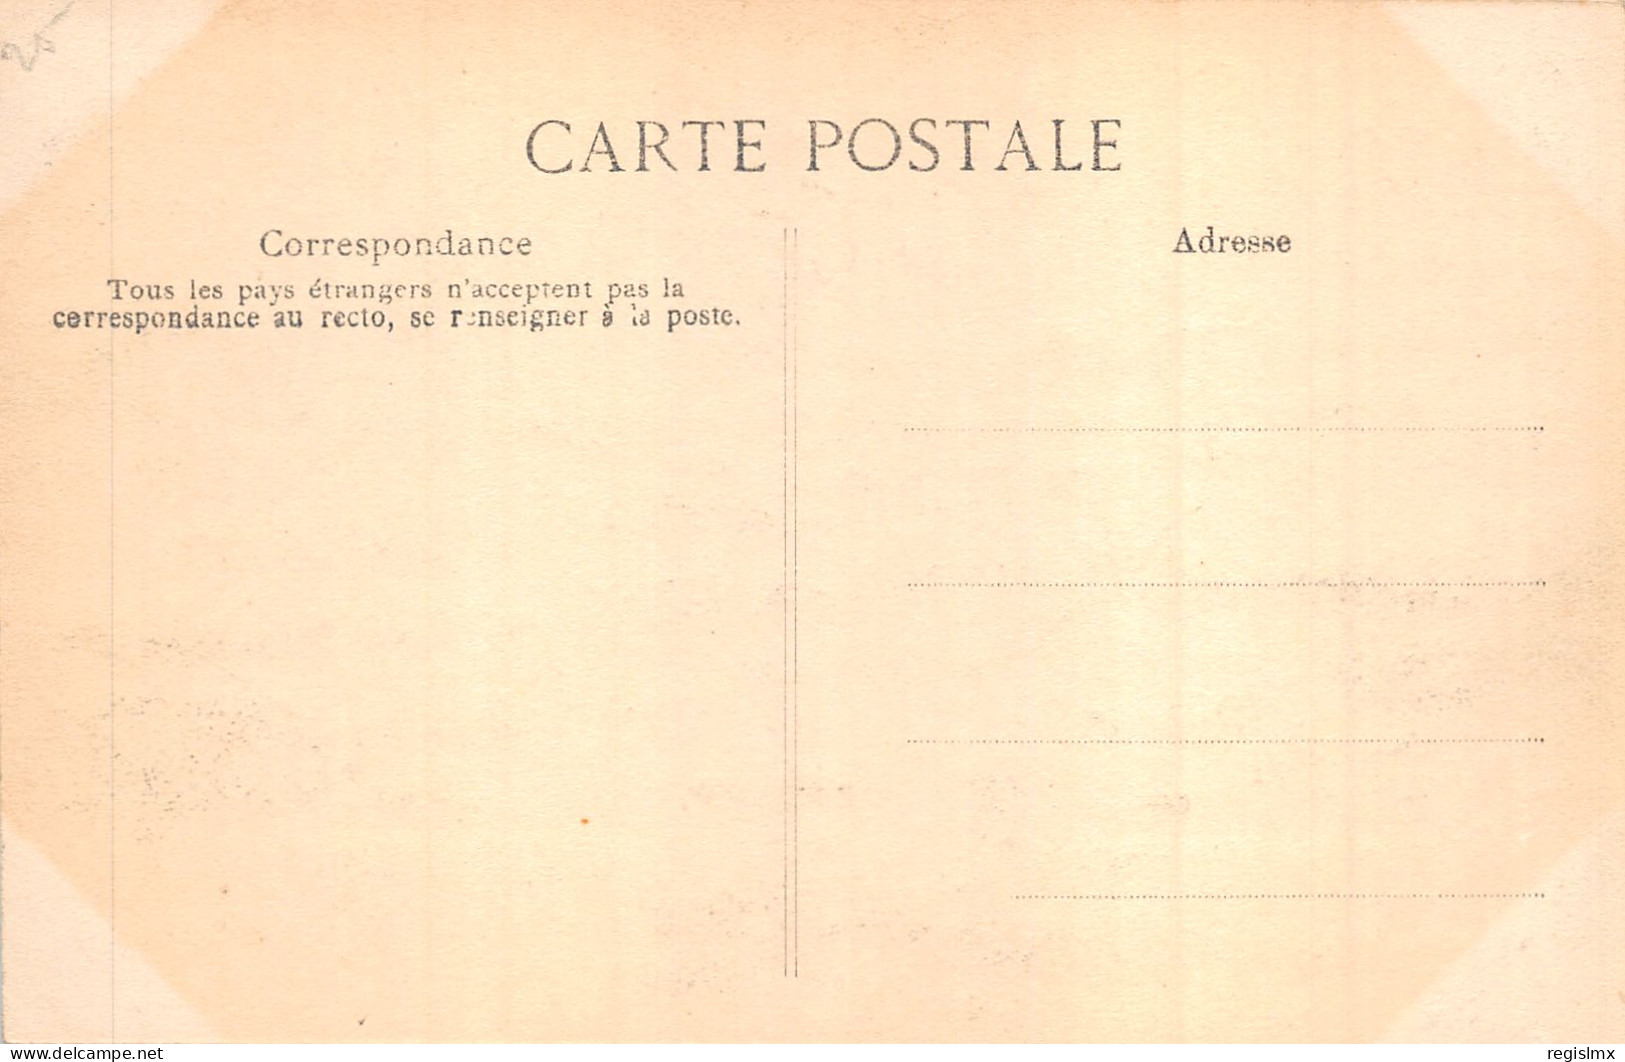 75-PARIS-CRUE DE LA SEINE-N°T2408-A/0075 - Überschwemmung 1910